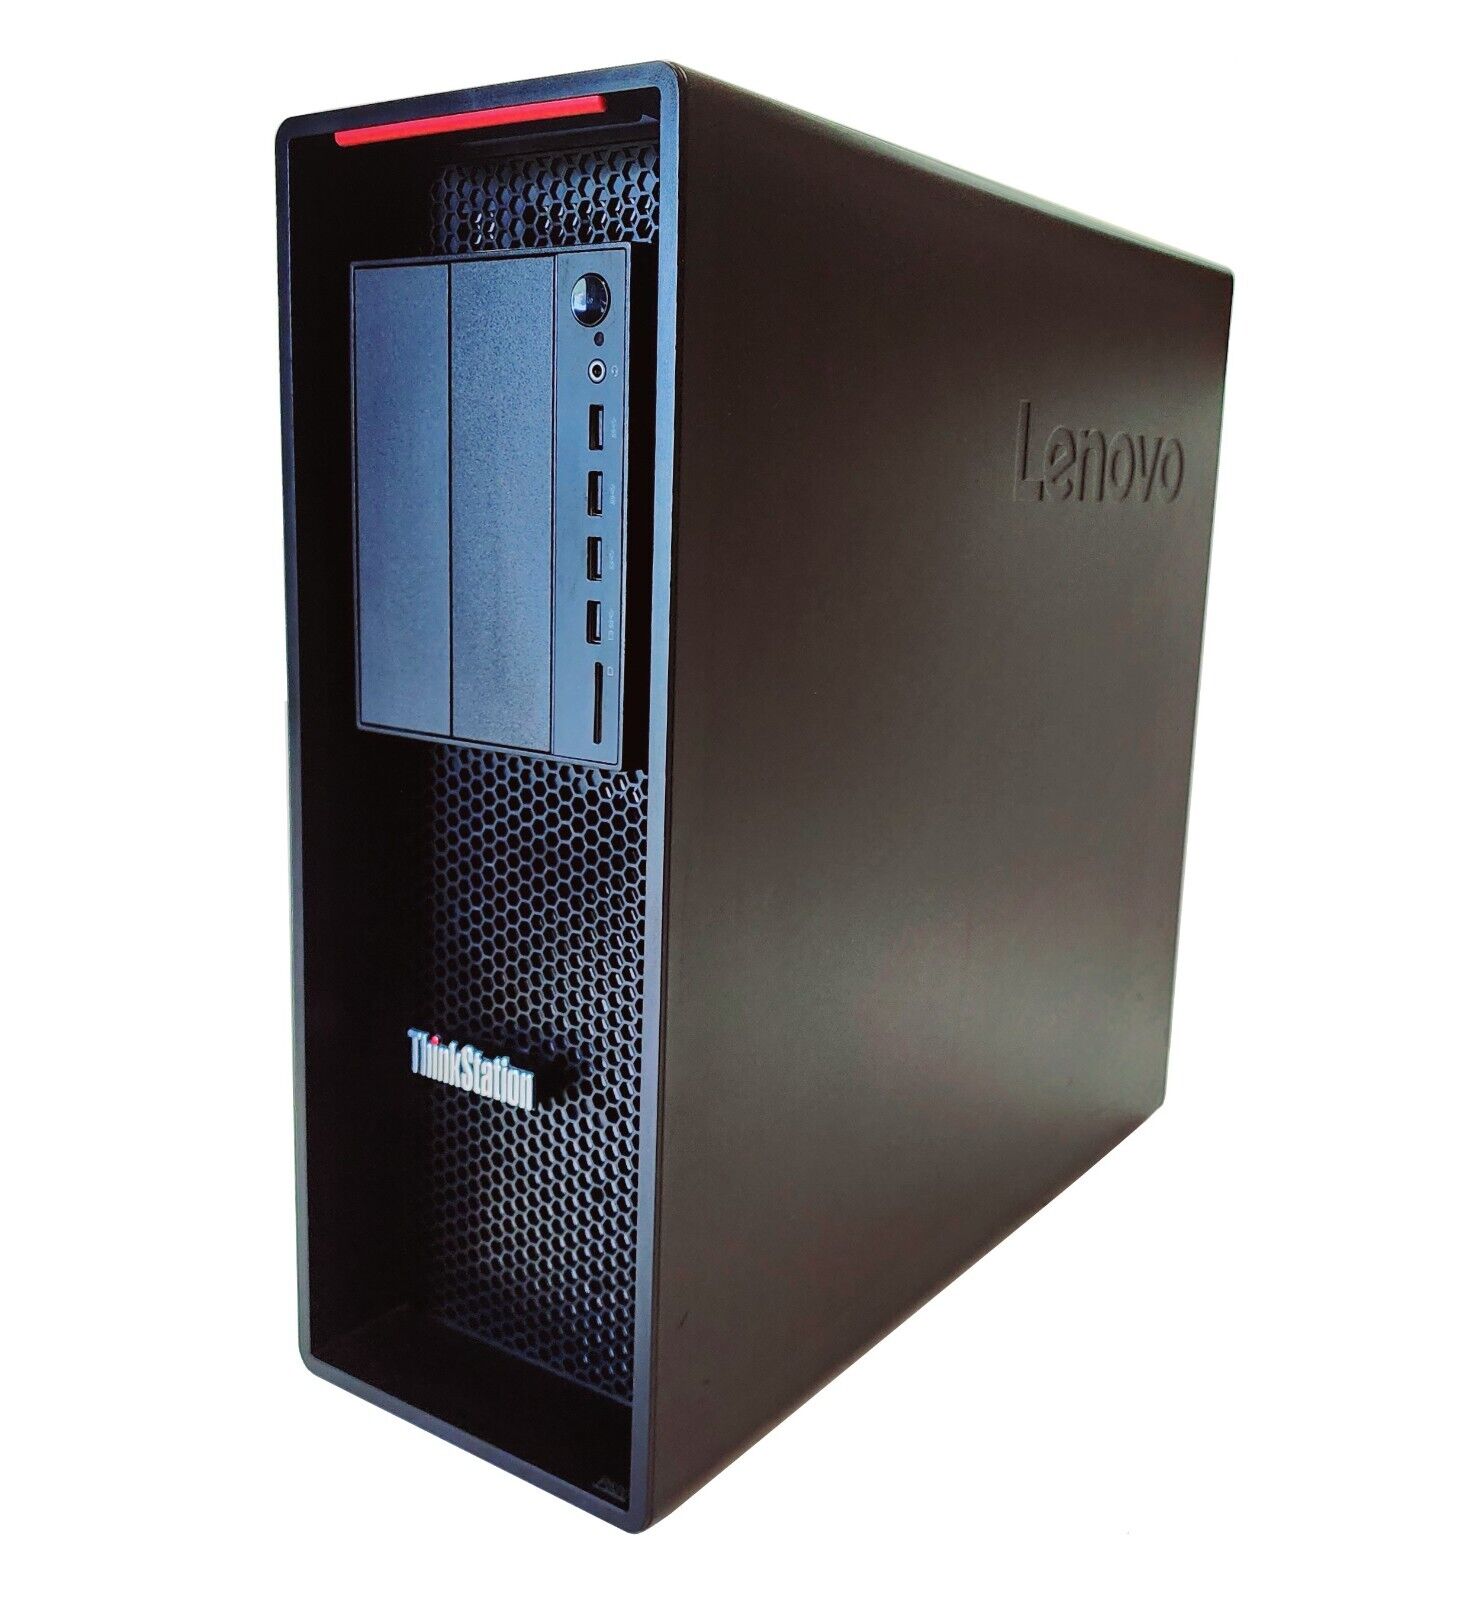 Lenovo ThinkStation P520 Workstation W-2135 3.70GHz 64GB DDR4 RAM No GPU/HDD/OS